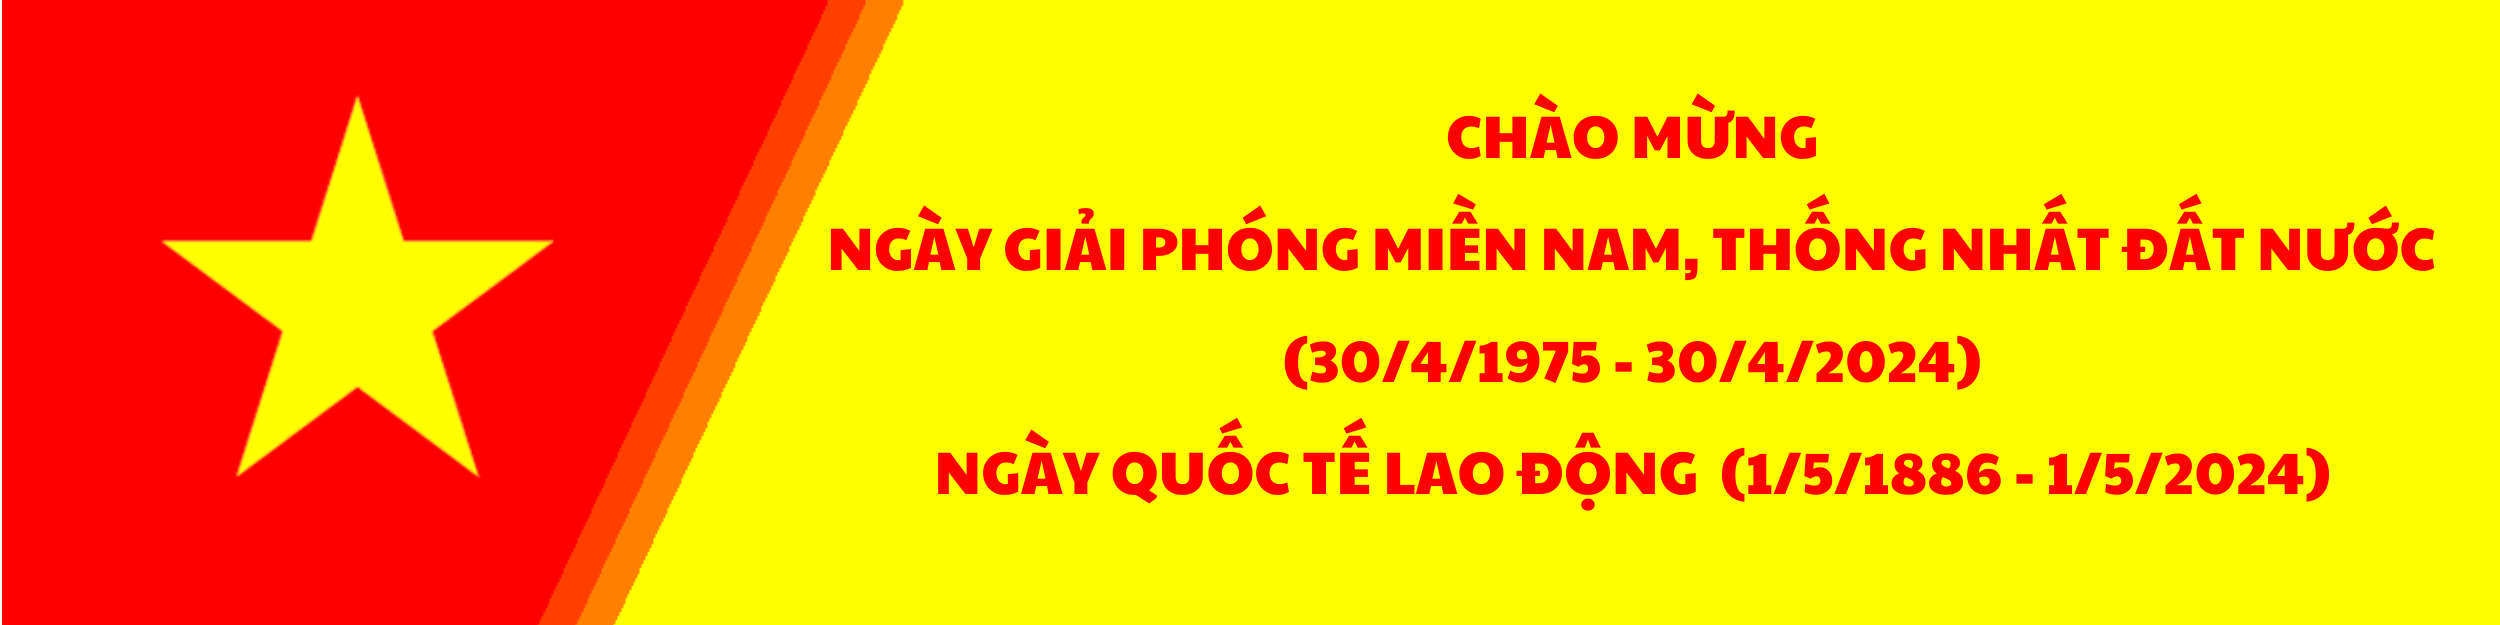 Trường THPT Nguyễn Văn Thoại – TP. Đà Nẵng